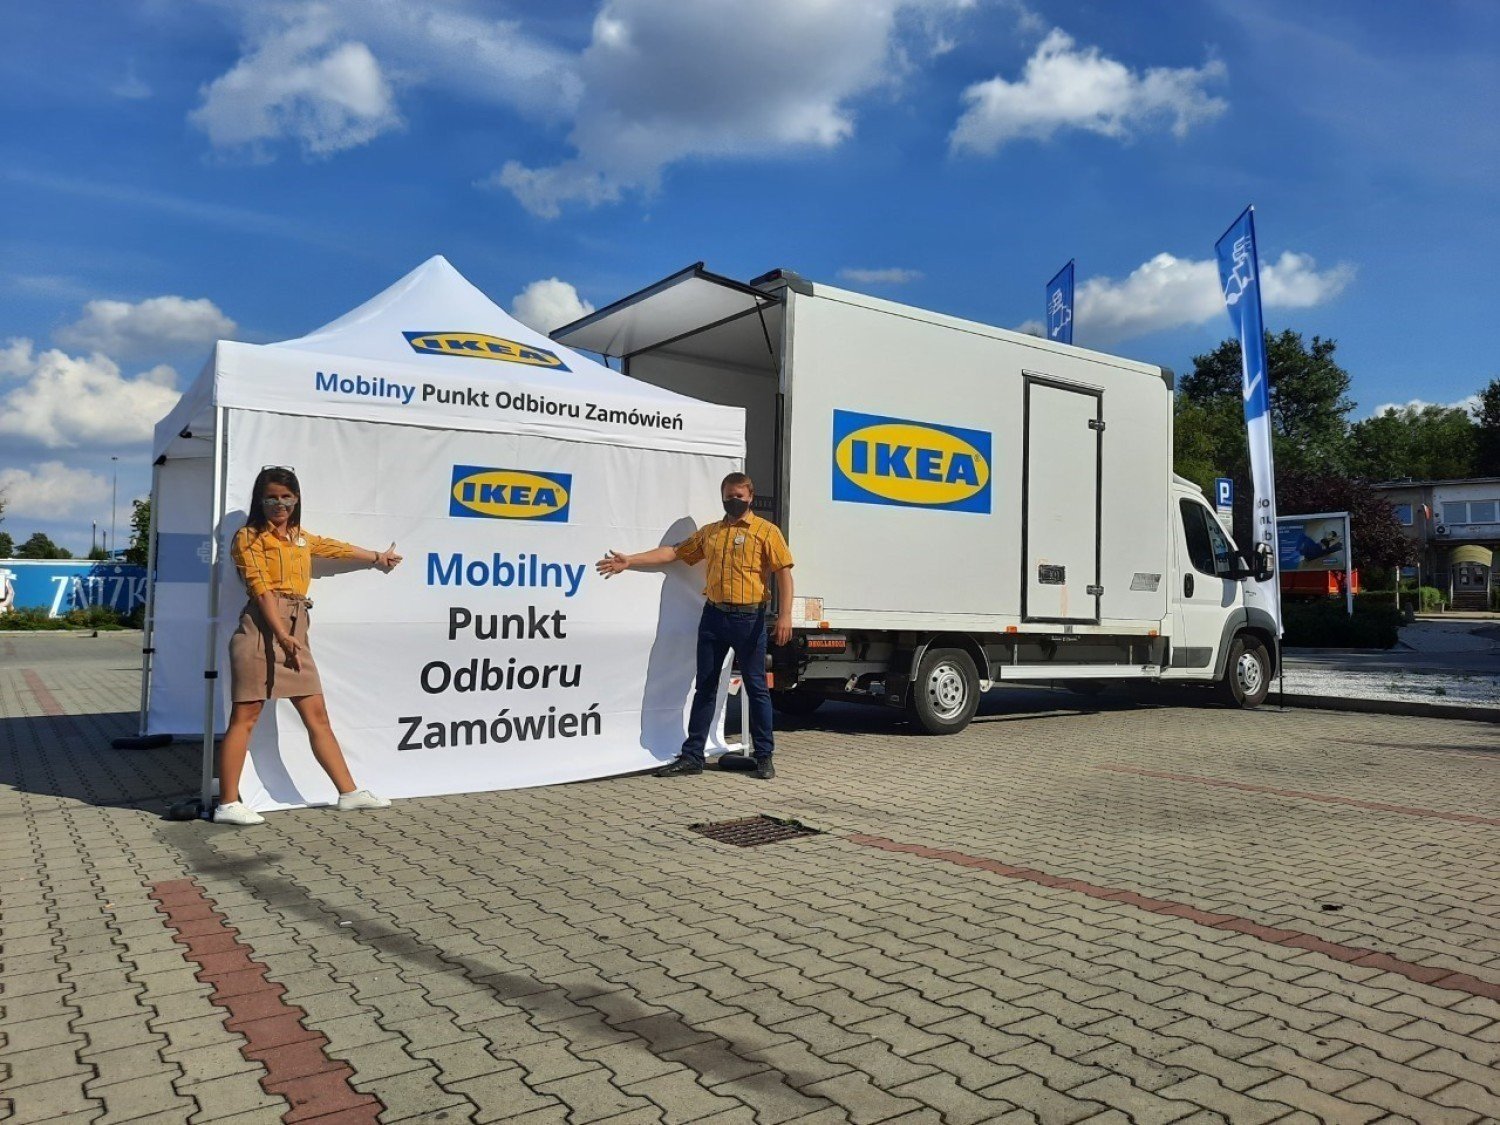 Zakupy ze sklepu Ikea odbierzesz teraz w Tomaszowie Mazowieckim. Nie będzie  już trzeba jeździć do Warszawy czy Łodzi | Tomaszów Mazowiecki Nasze Miasto